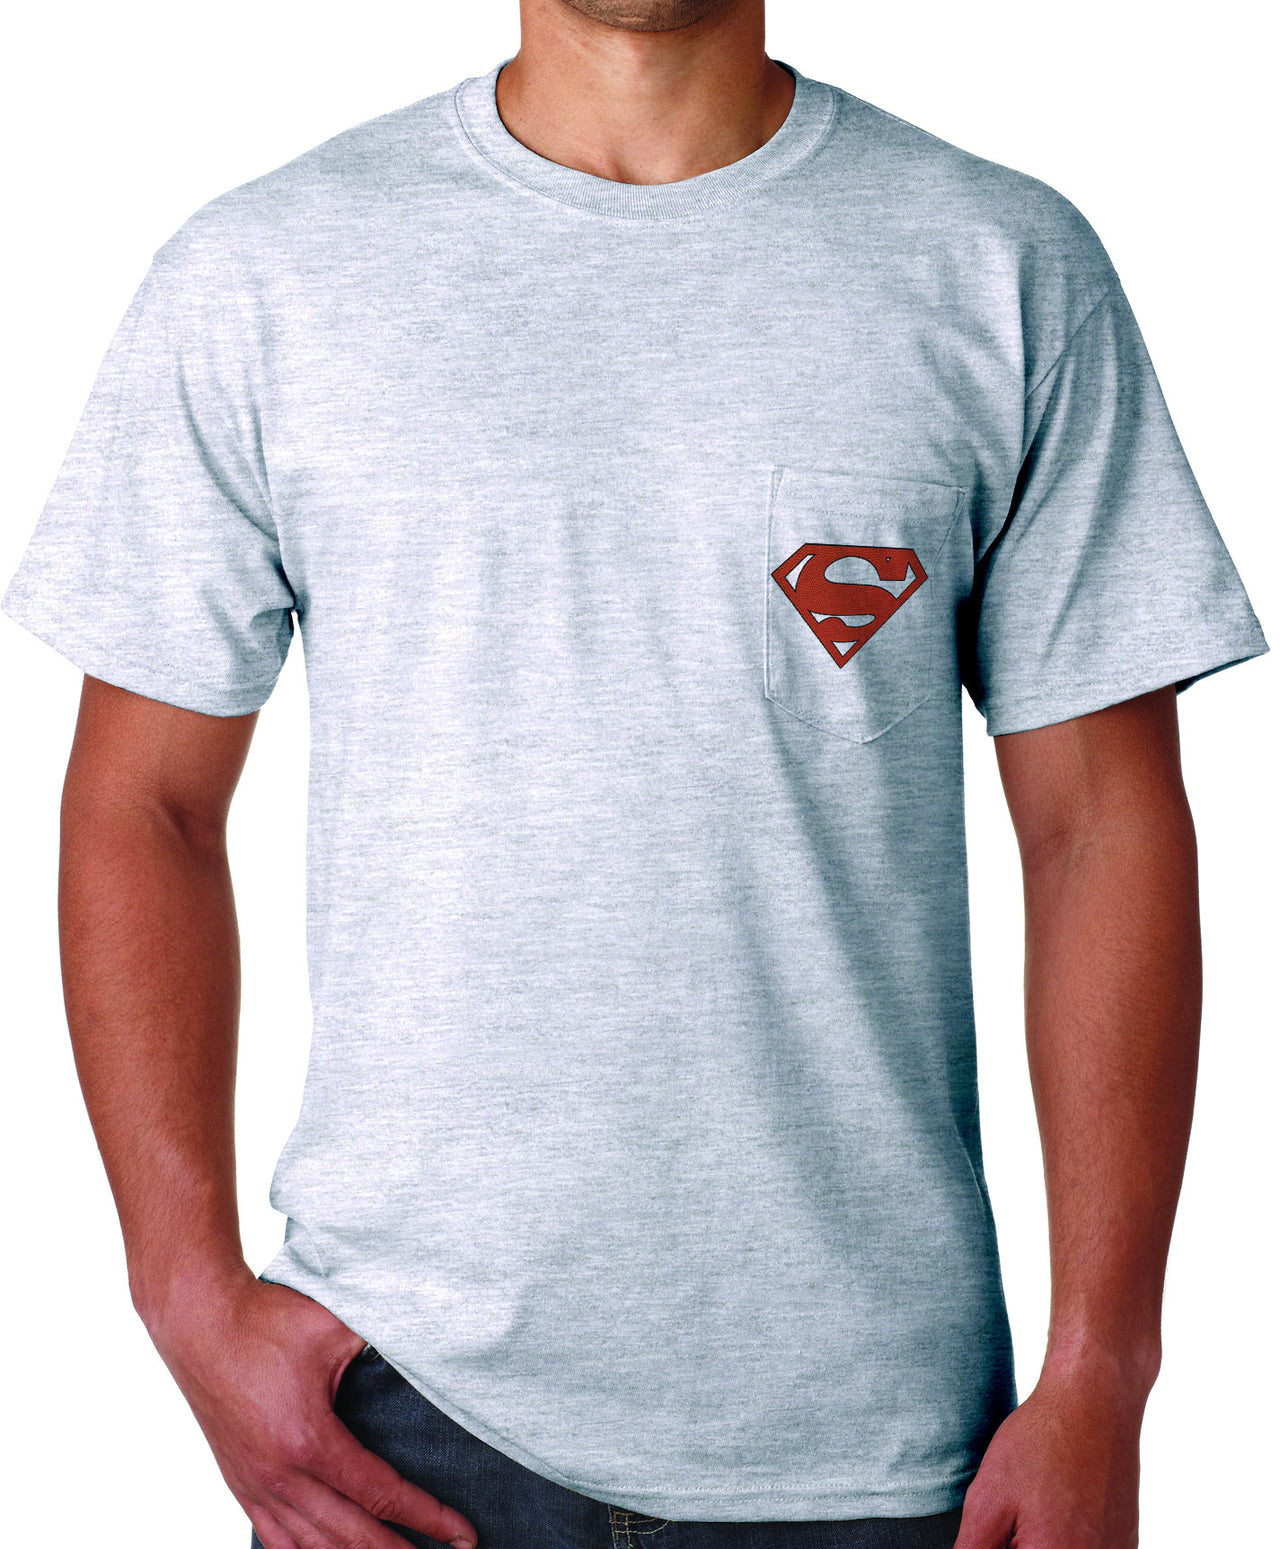 Superman "Play Like" Football Logo on Ash Grey Colored Pocket Tshirt - TshirtNow.net - 3